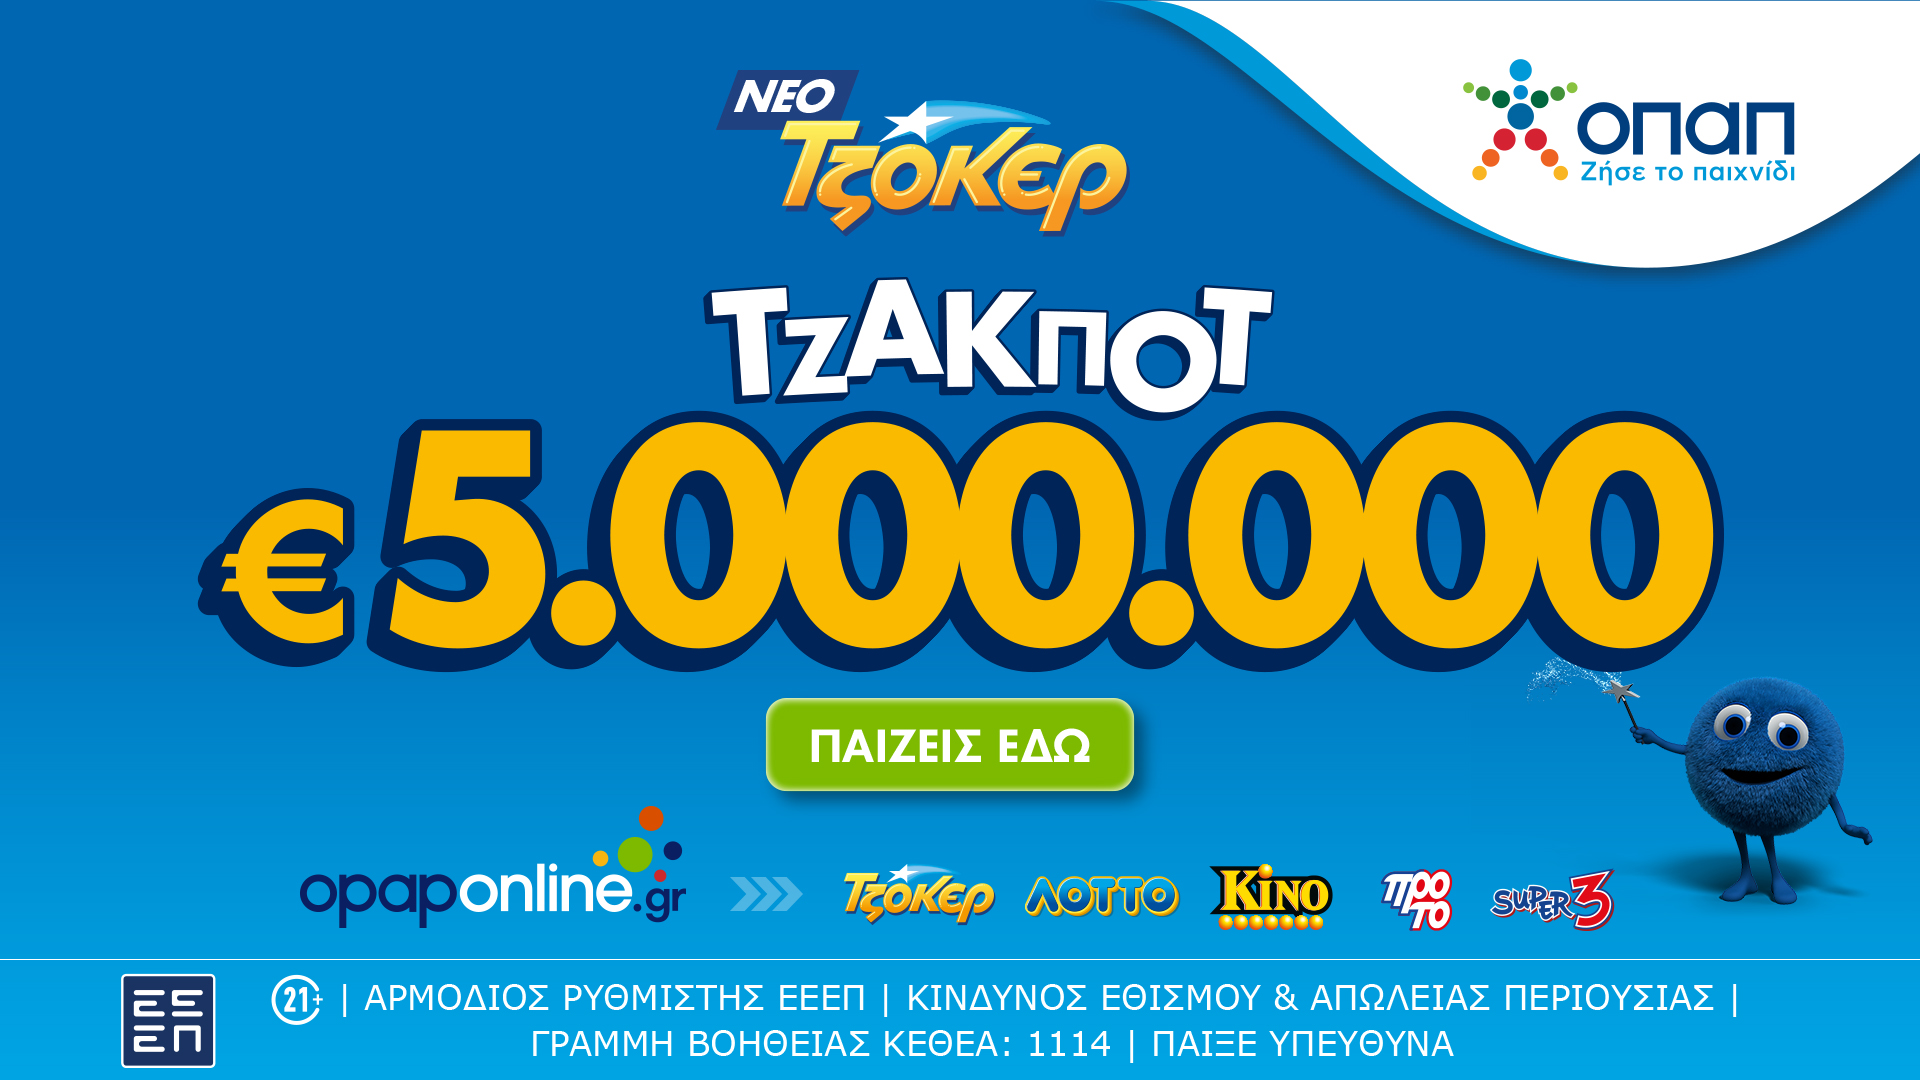 Τζακ ποτ 5.000.000 ευρώ απόψε από το ΤΖΟΚΕΡ και έπαθλα των 100.000 ευρώ στους νικητές της 2ης κατηγορίας – Online κατάθεση δελτίων με λίγα κλικ μέσω του opaponline.gr